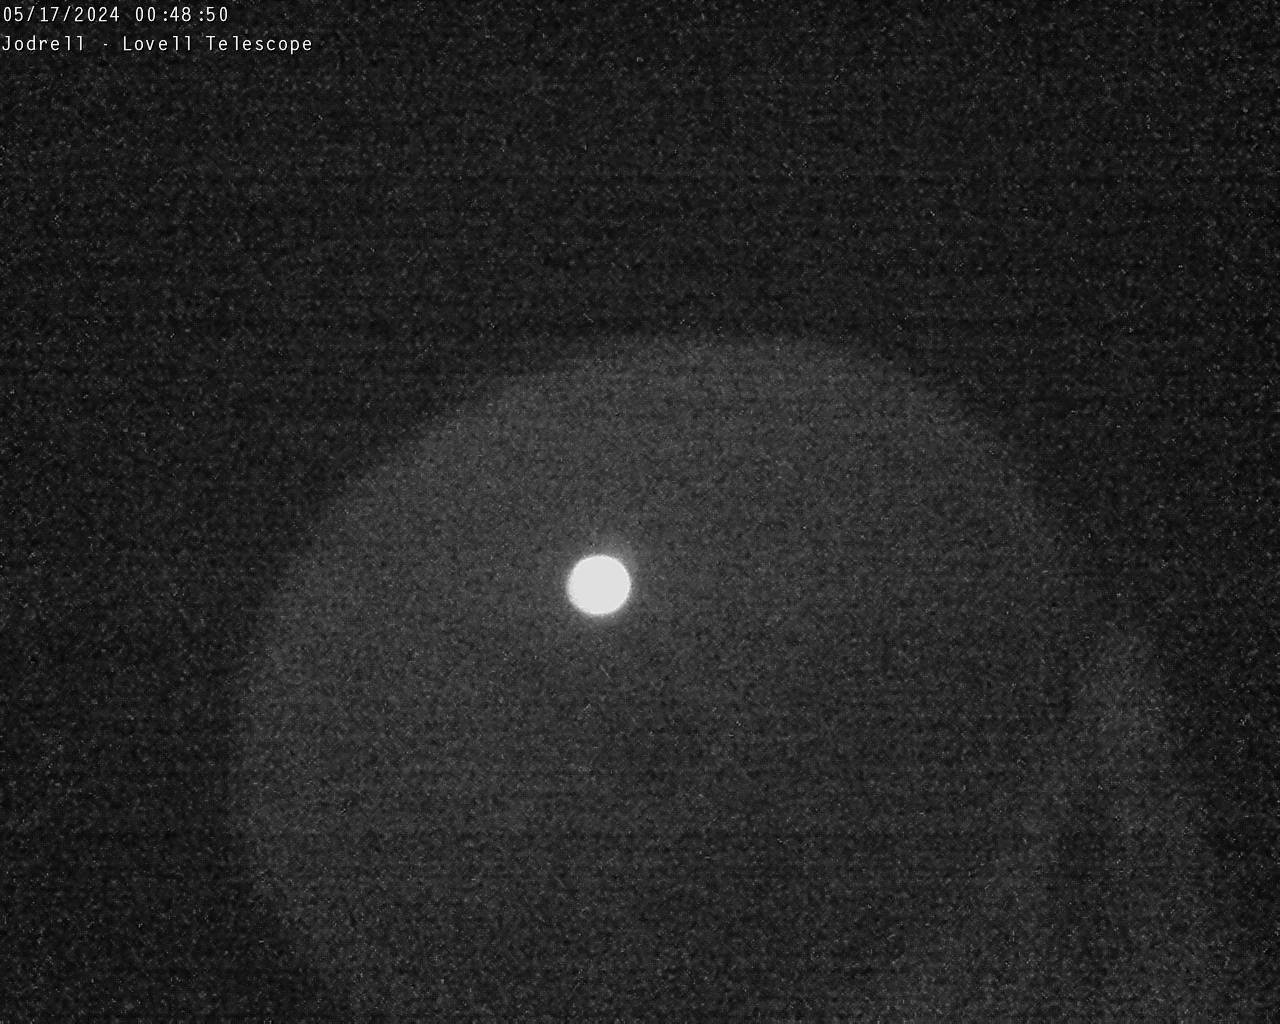 Observatorio Jodrell Bank Sáb. 00:49